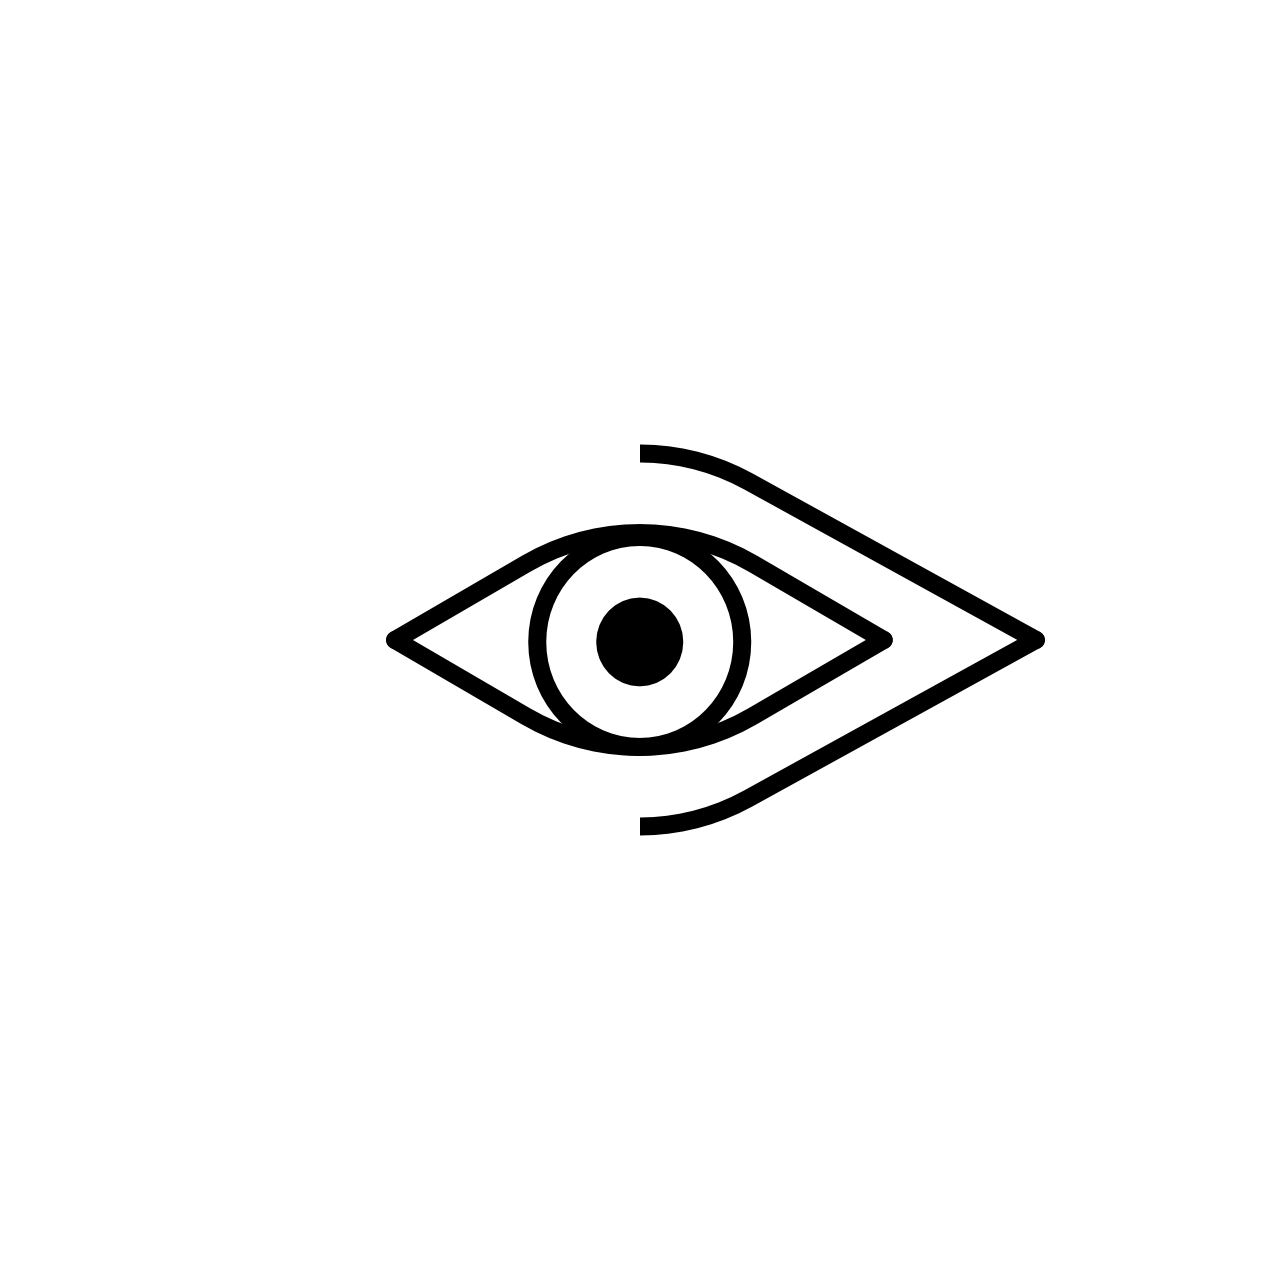 Logodesign Layout Eye Lines